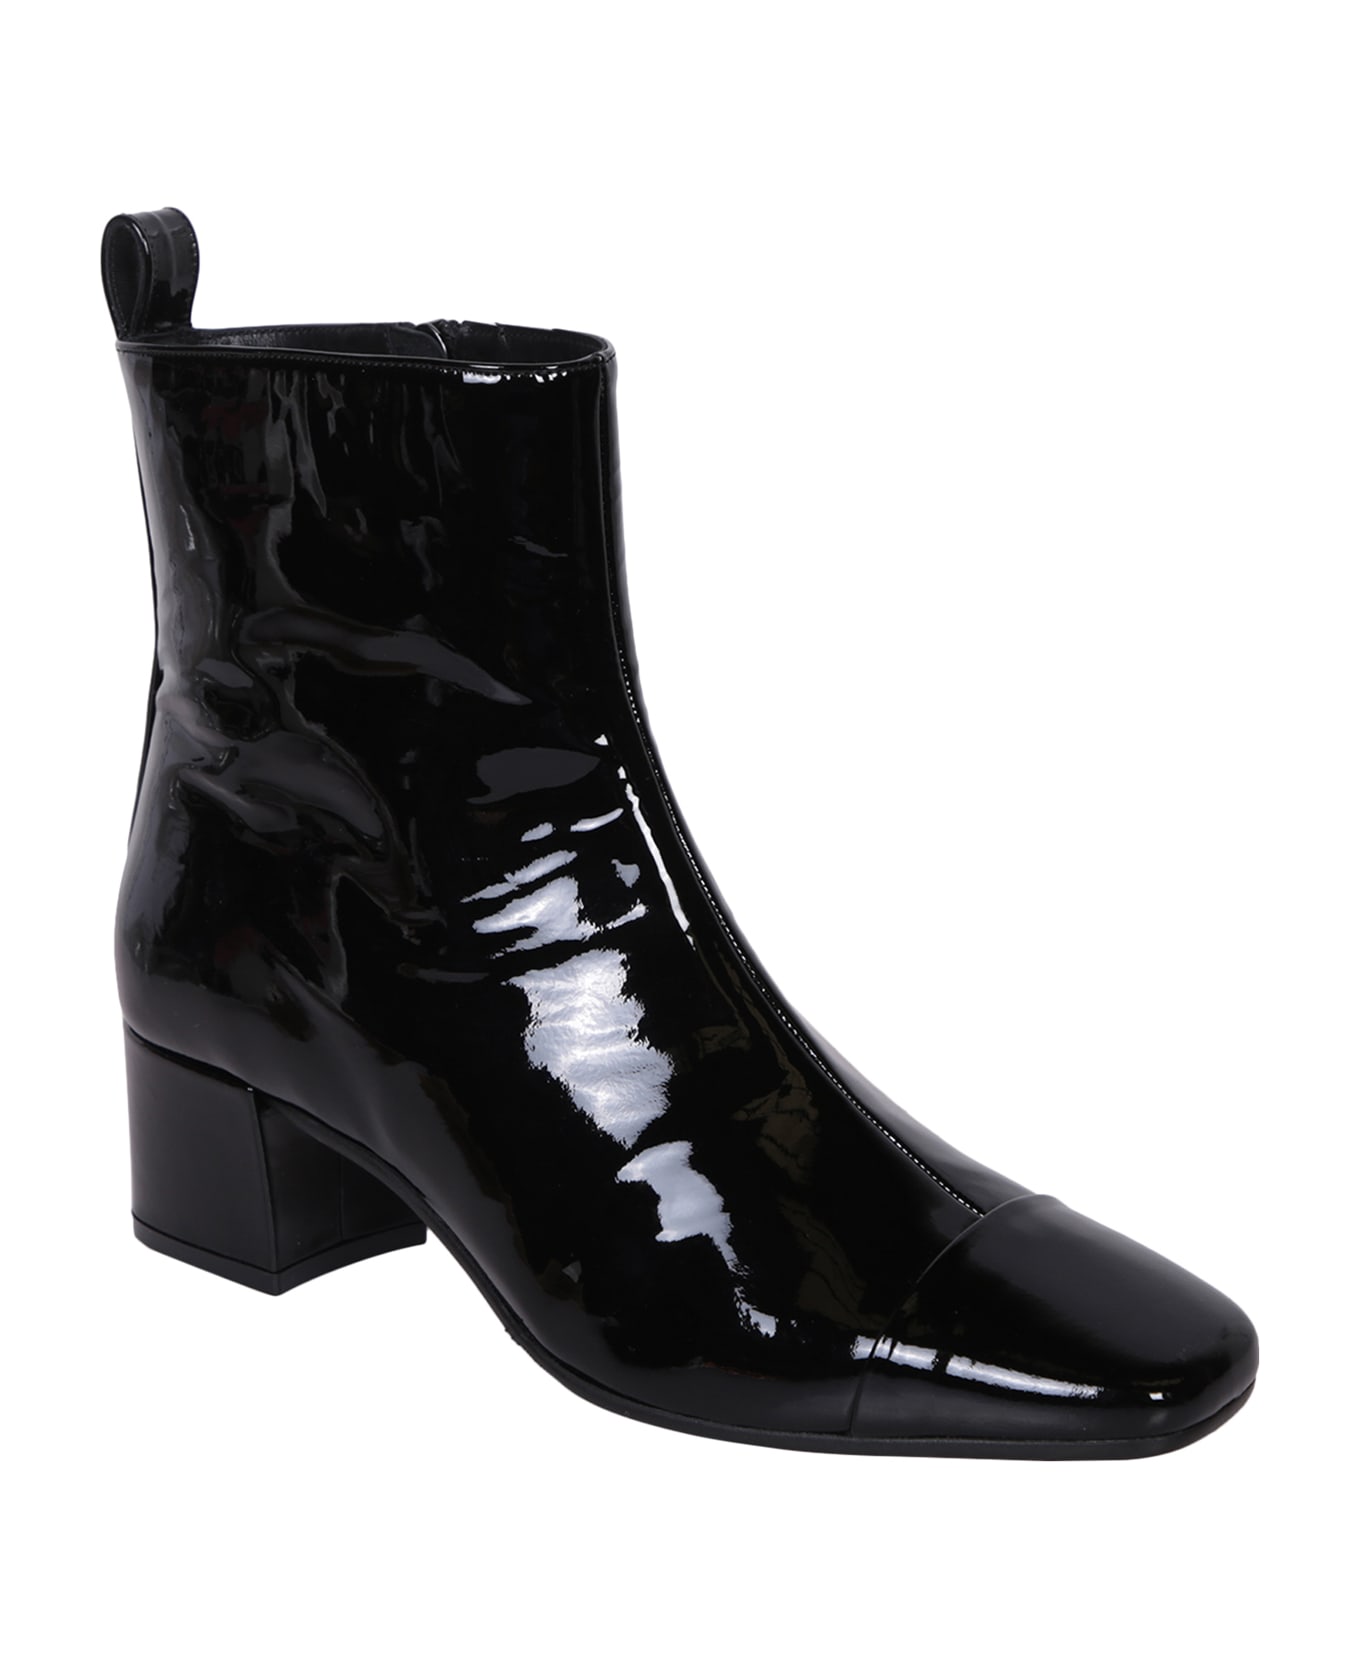 Carel Estime Ankle Boots - Black